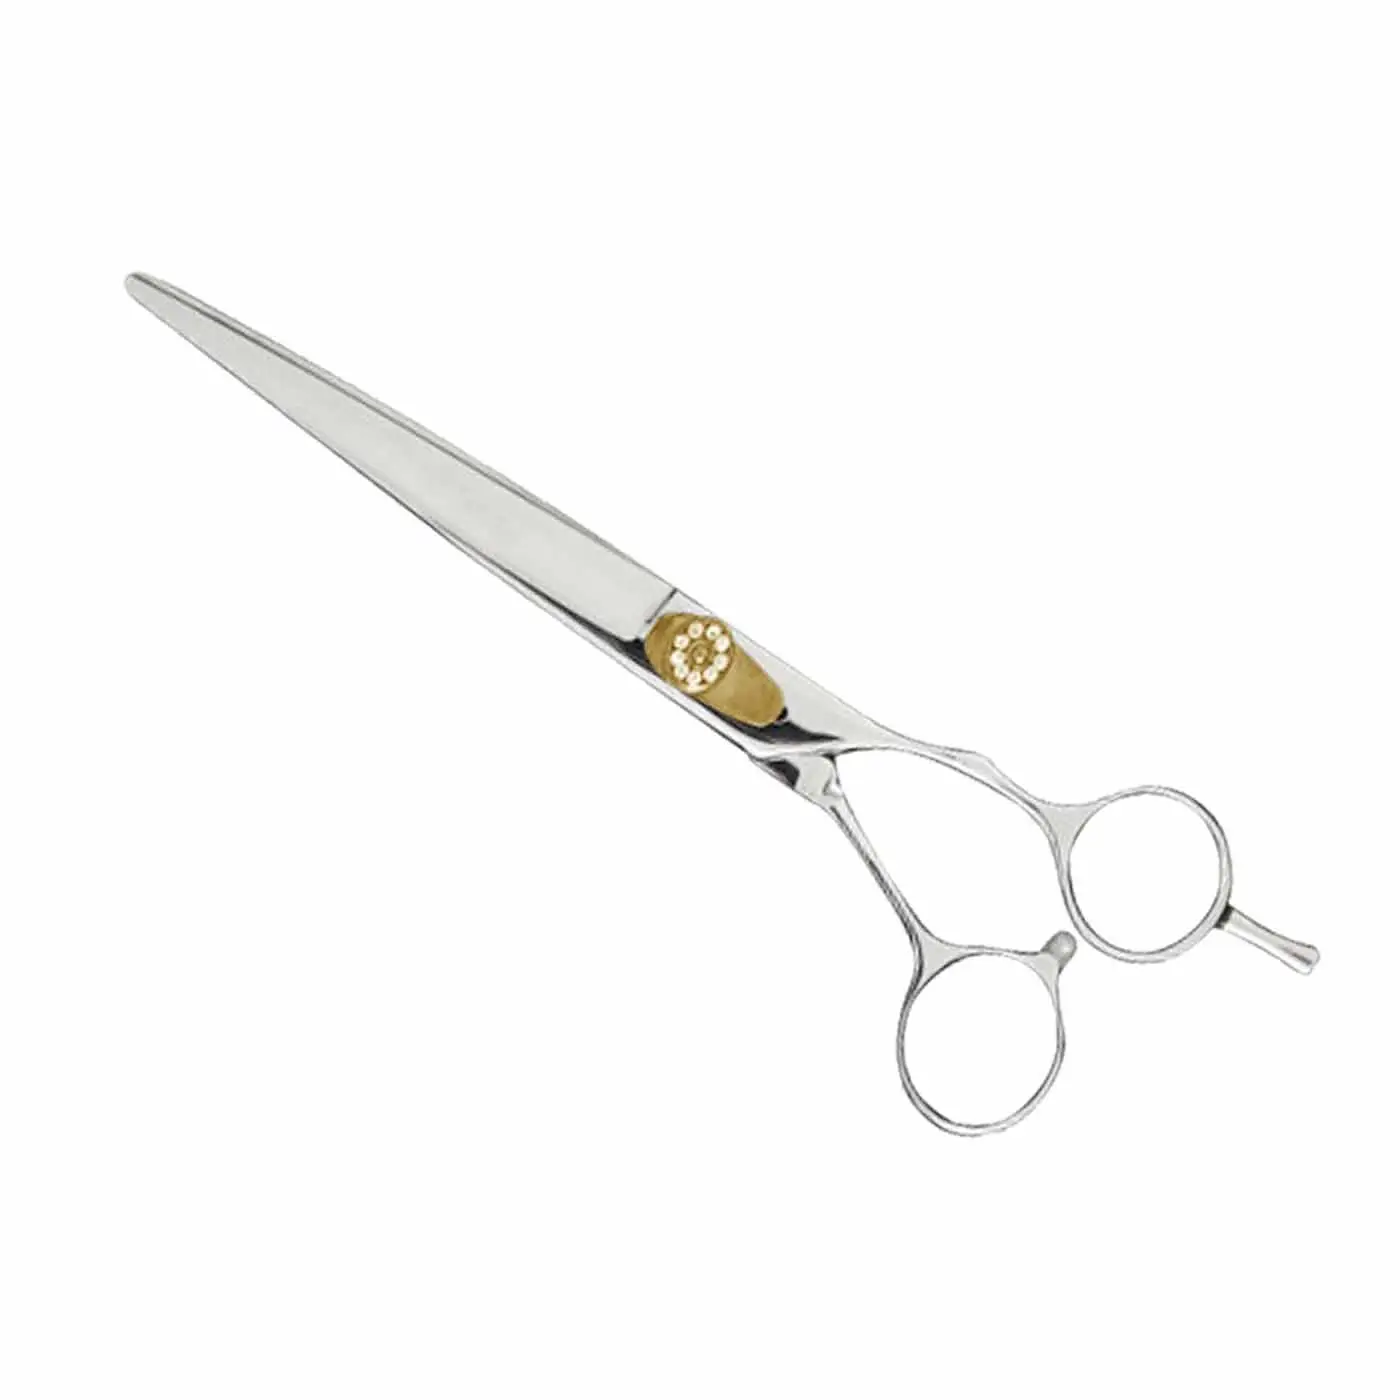 Pet Grooming Scissors New Listing Pet Grooming cutting Scissors/ Dog Grooming Scissor BY SIGAL MEDCO